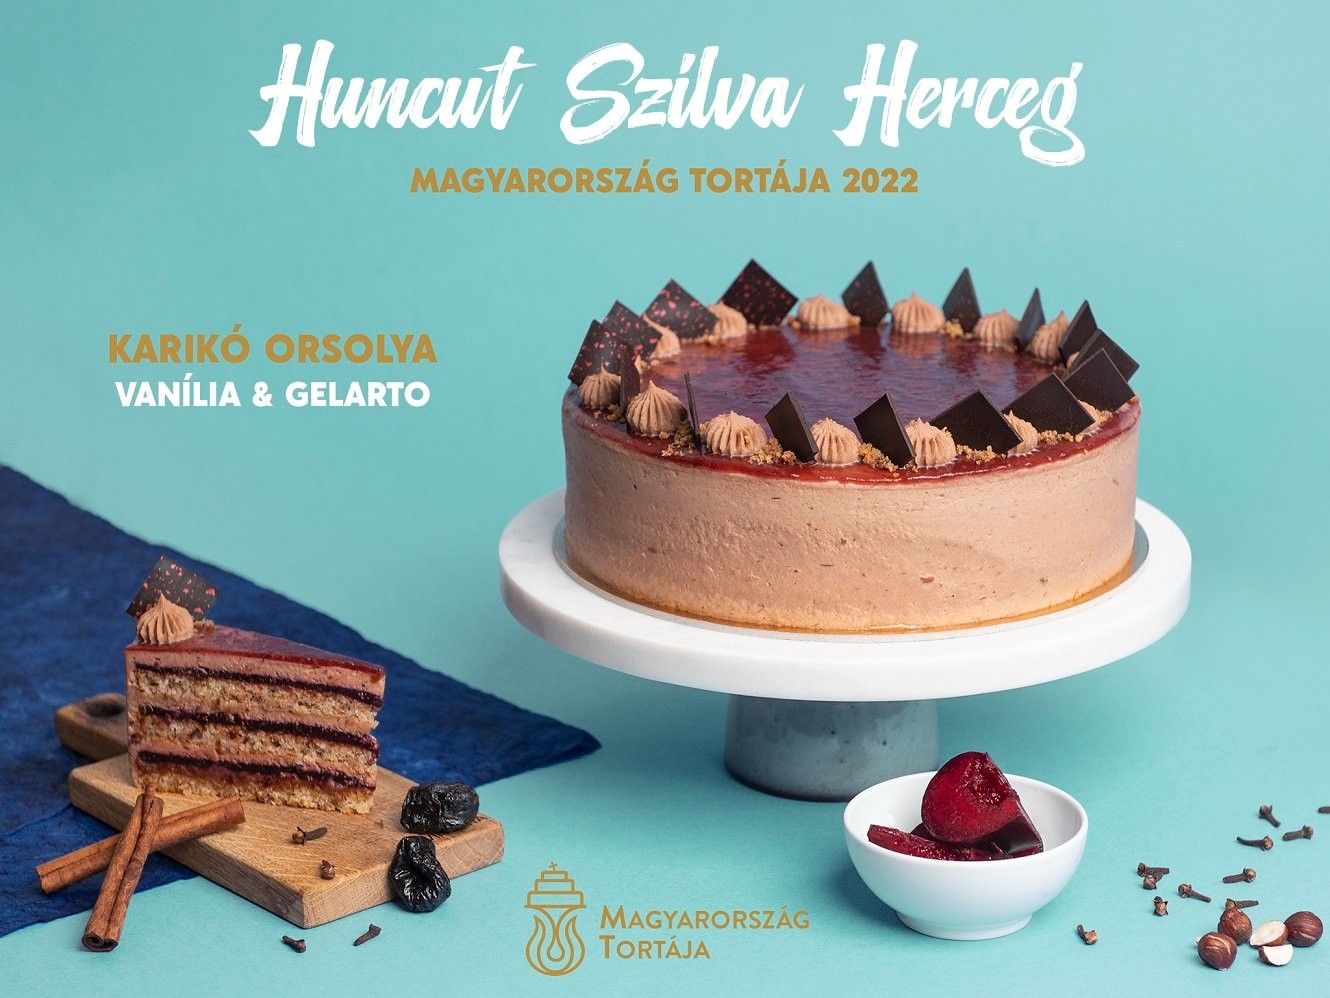 Megvan Magyarország idei tortája